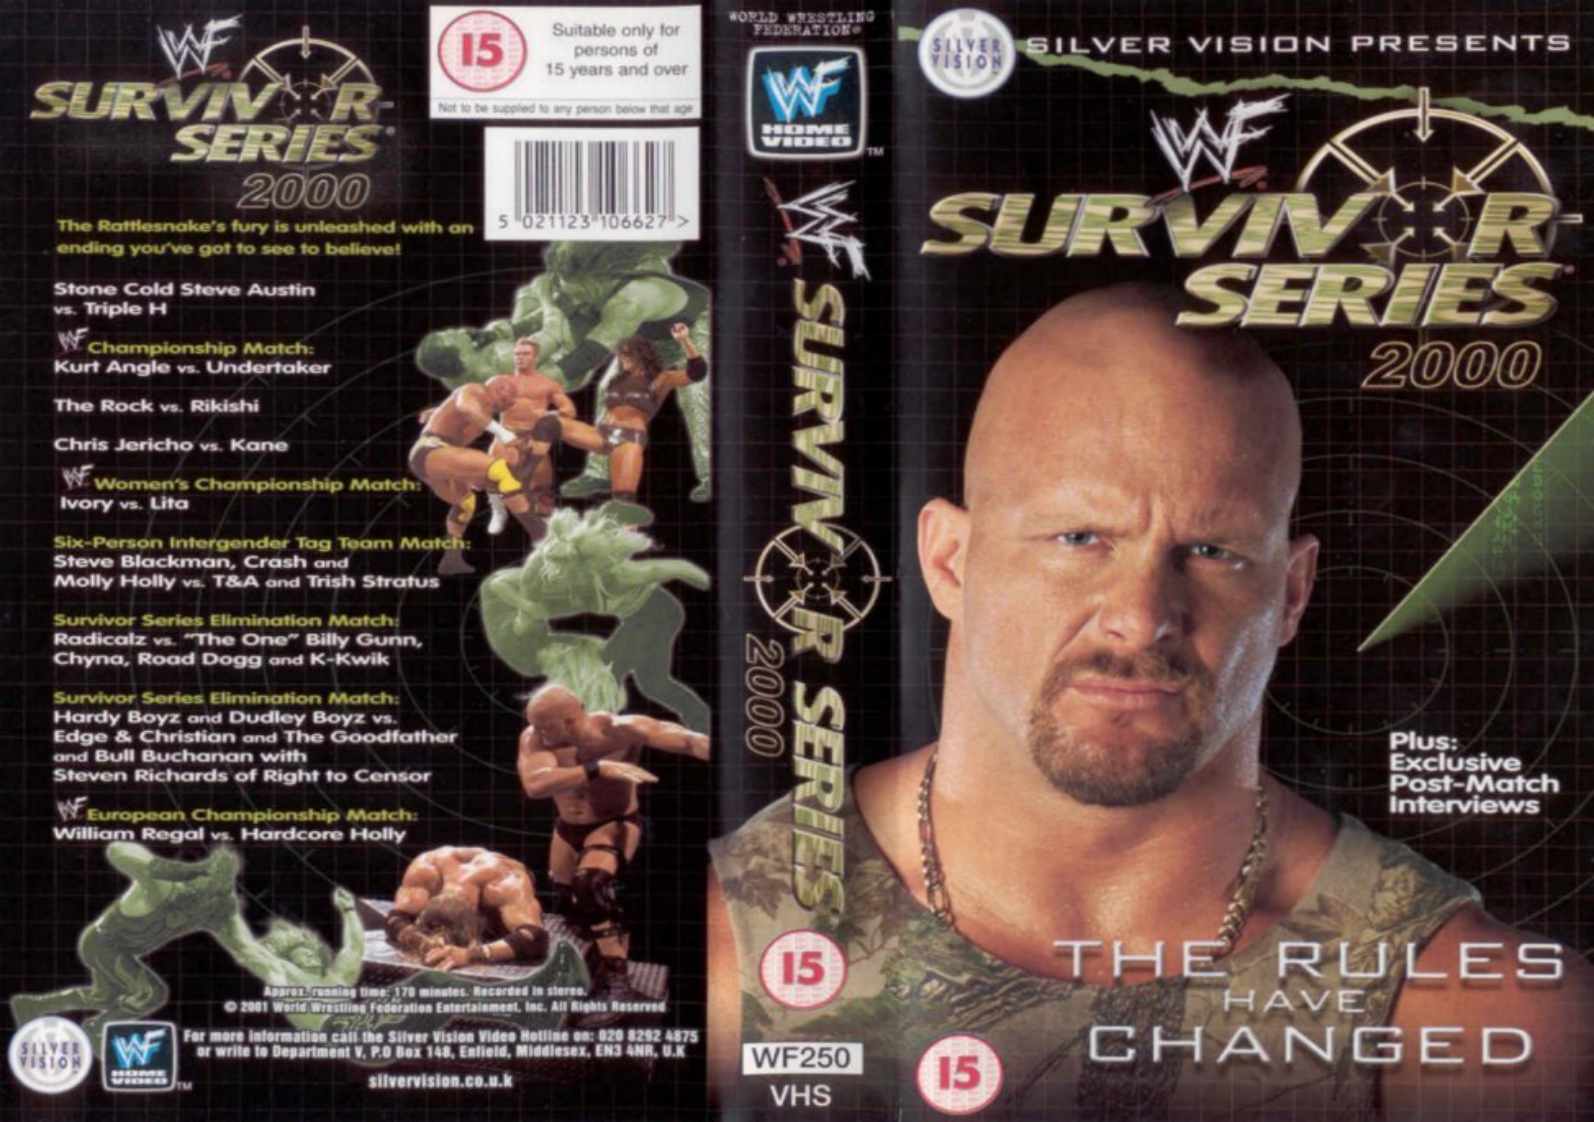 Survivor_Series_2000_DVD.jpg